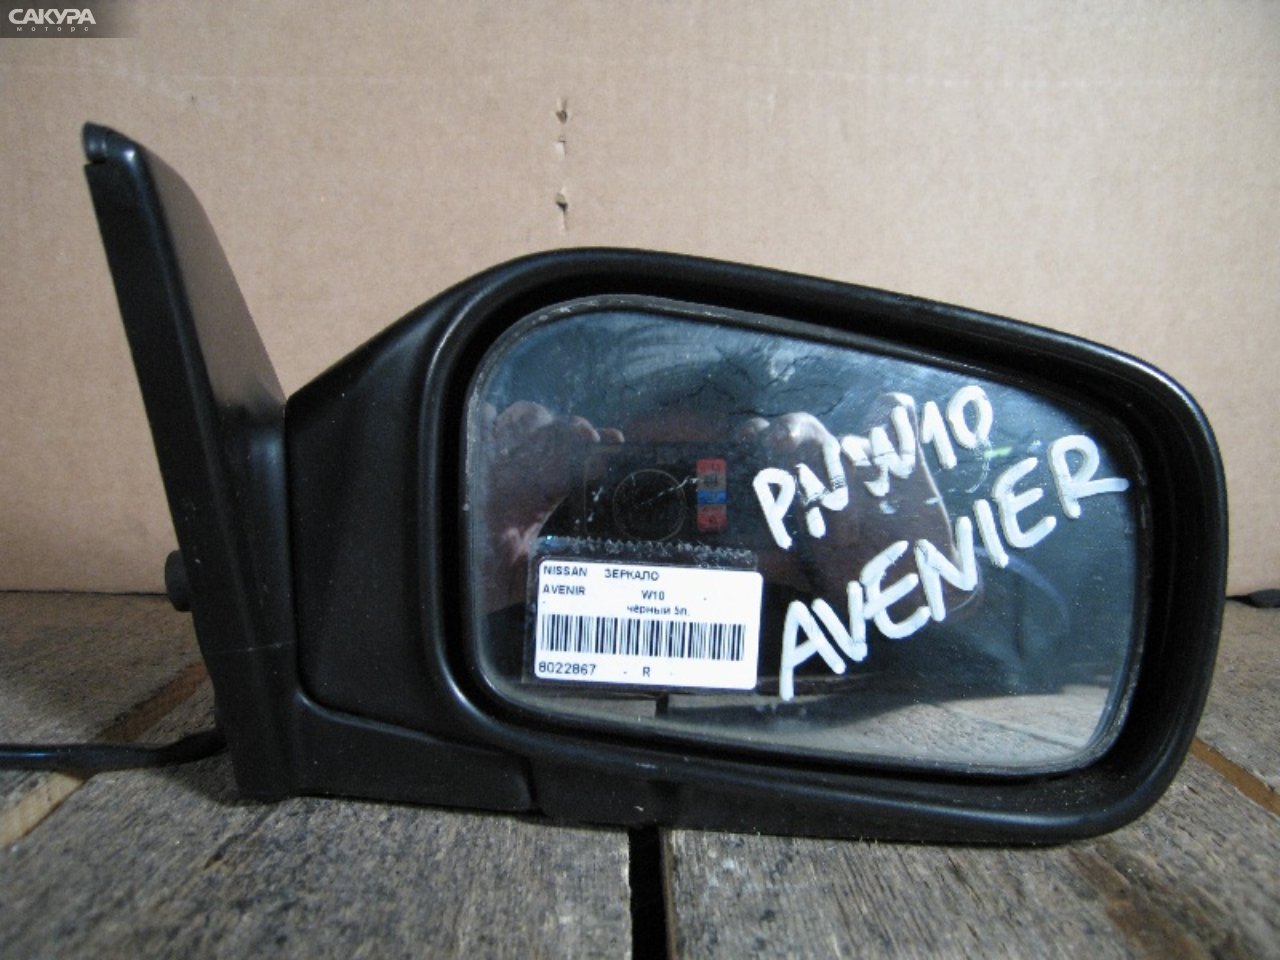 Зеркало боковое правое Nissan Avenir W10: купить в Сакура Абакан.